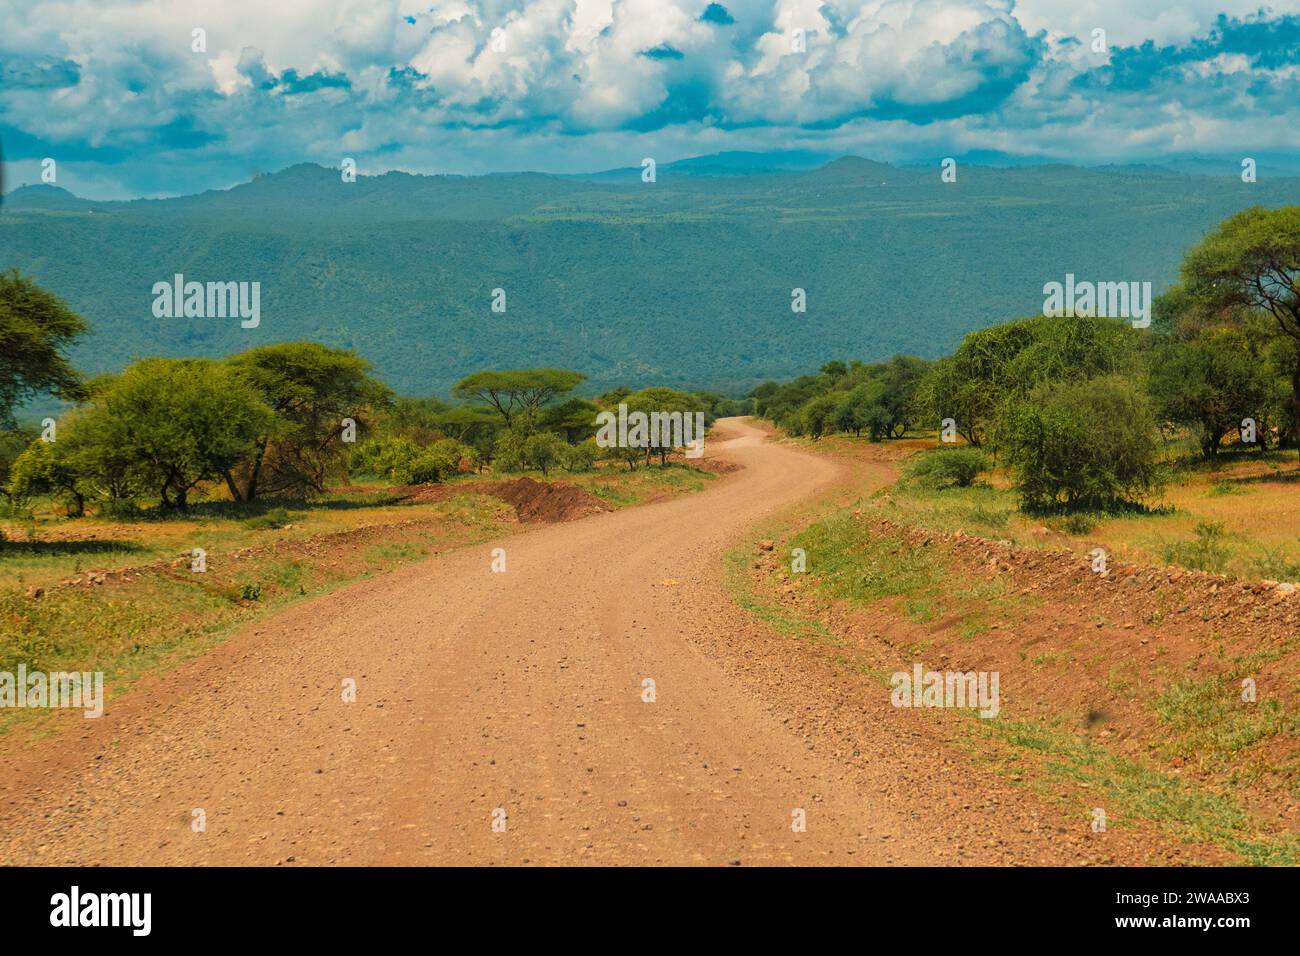 Un chemin de terre contre les montagnes dans la zone de conservation de Ngorongoro en Tanzanie Banque D'Images